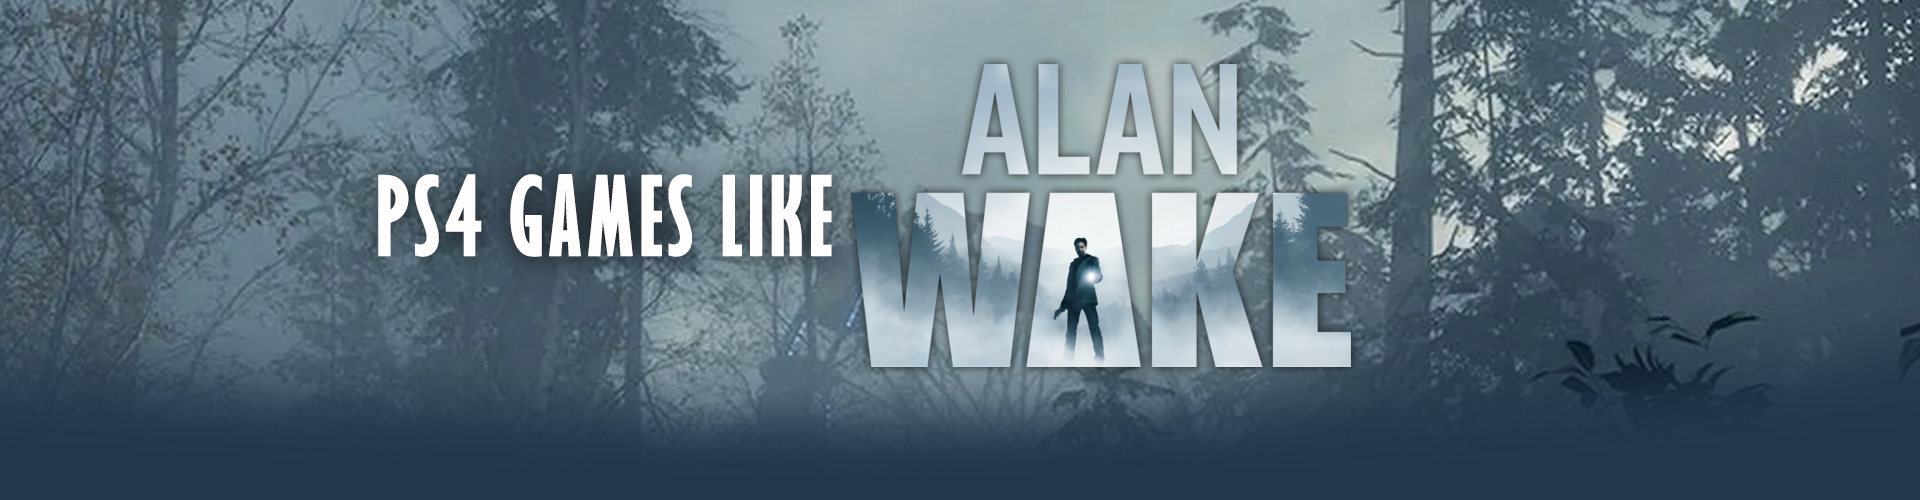 PS4 Games Like Alan Wake